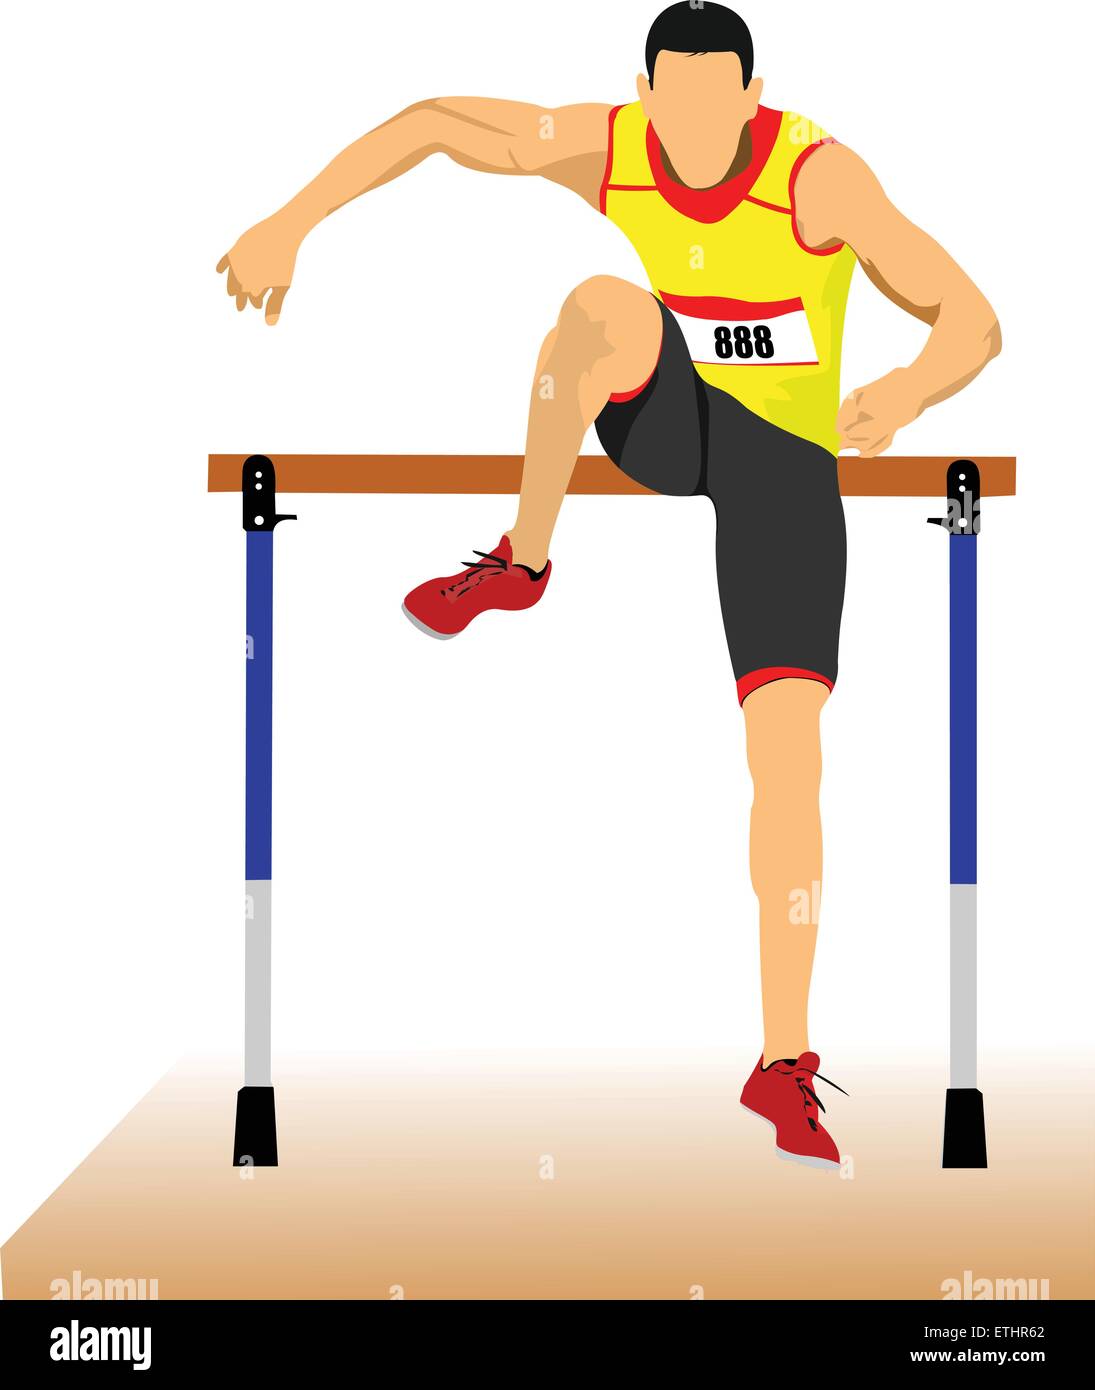 Mann läuft Hürden. Vektor-illustration Stock Vektor